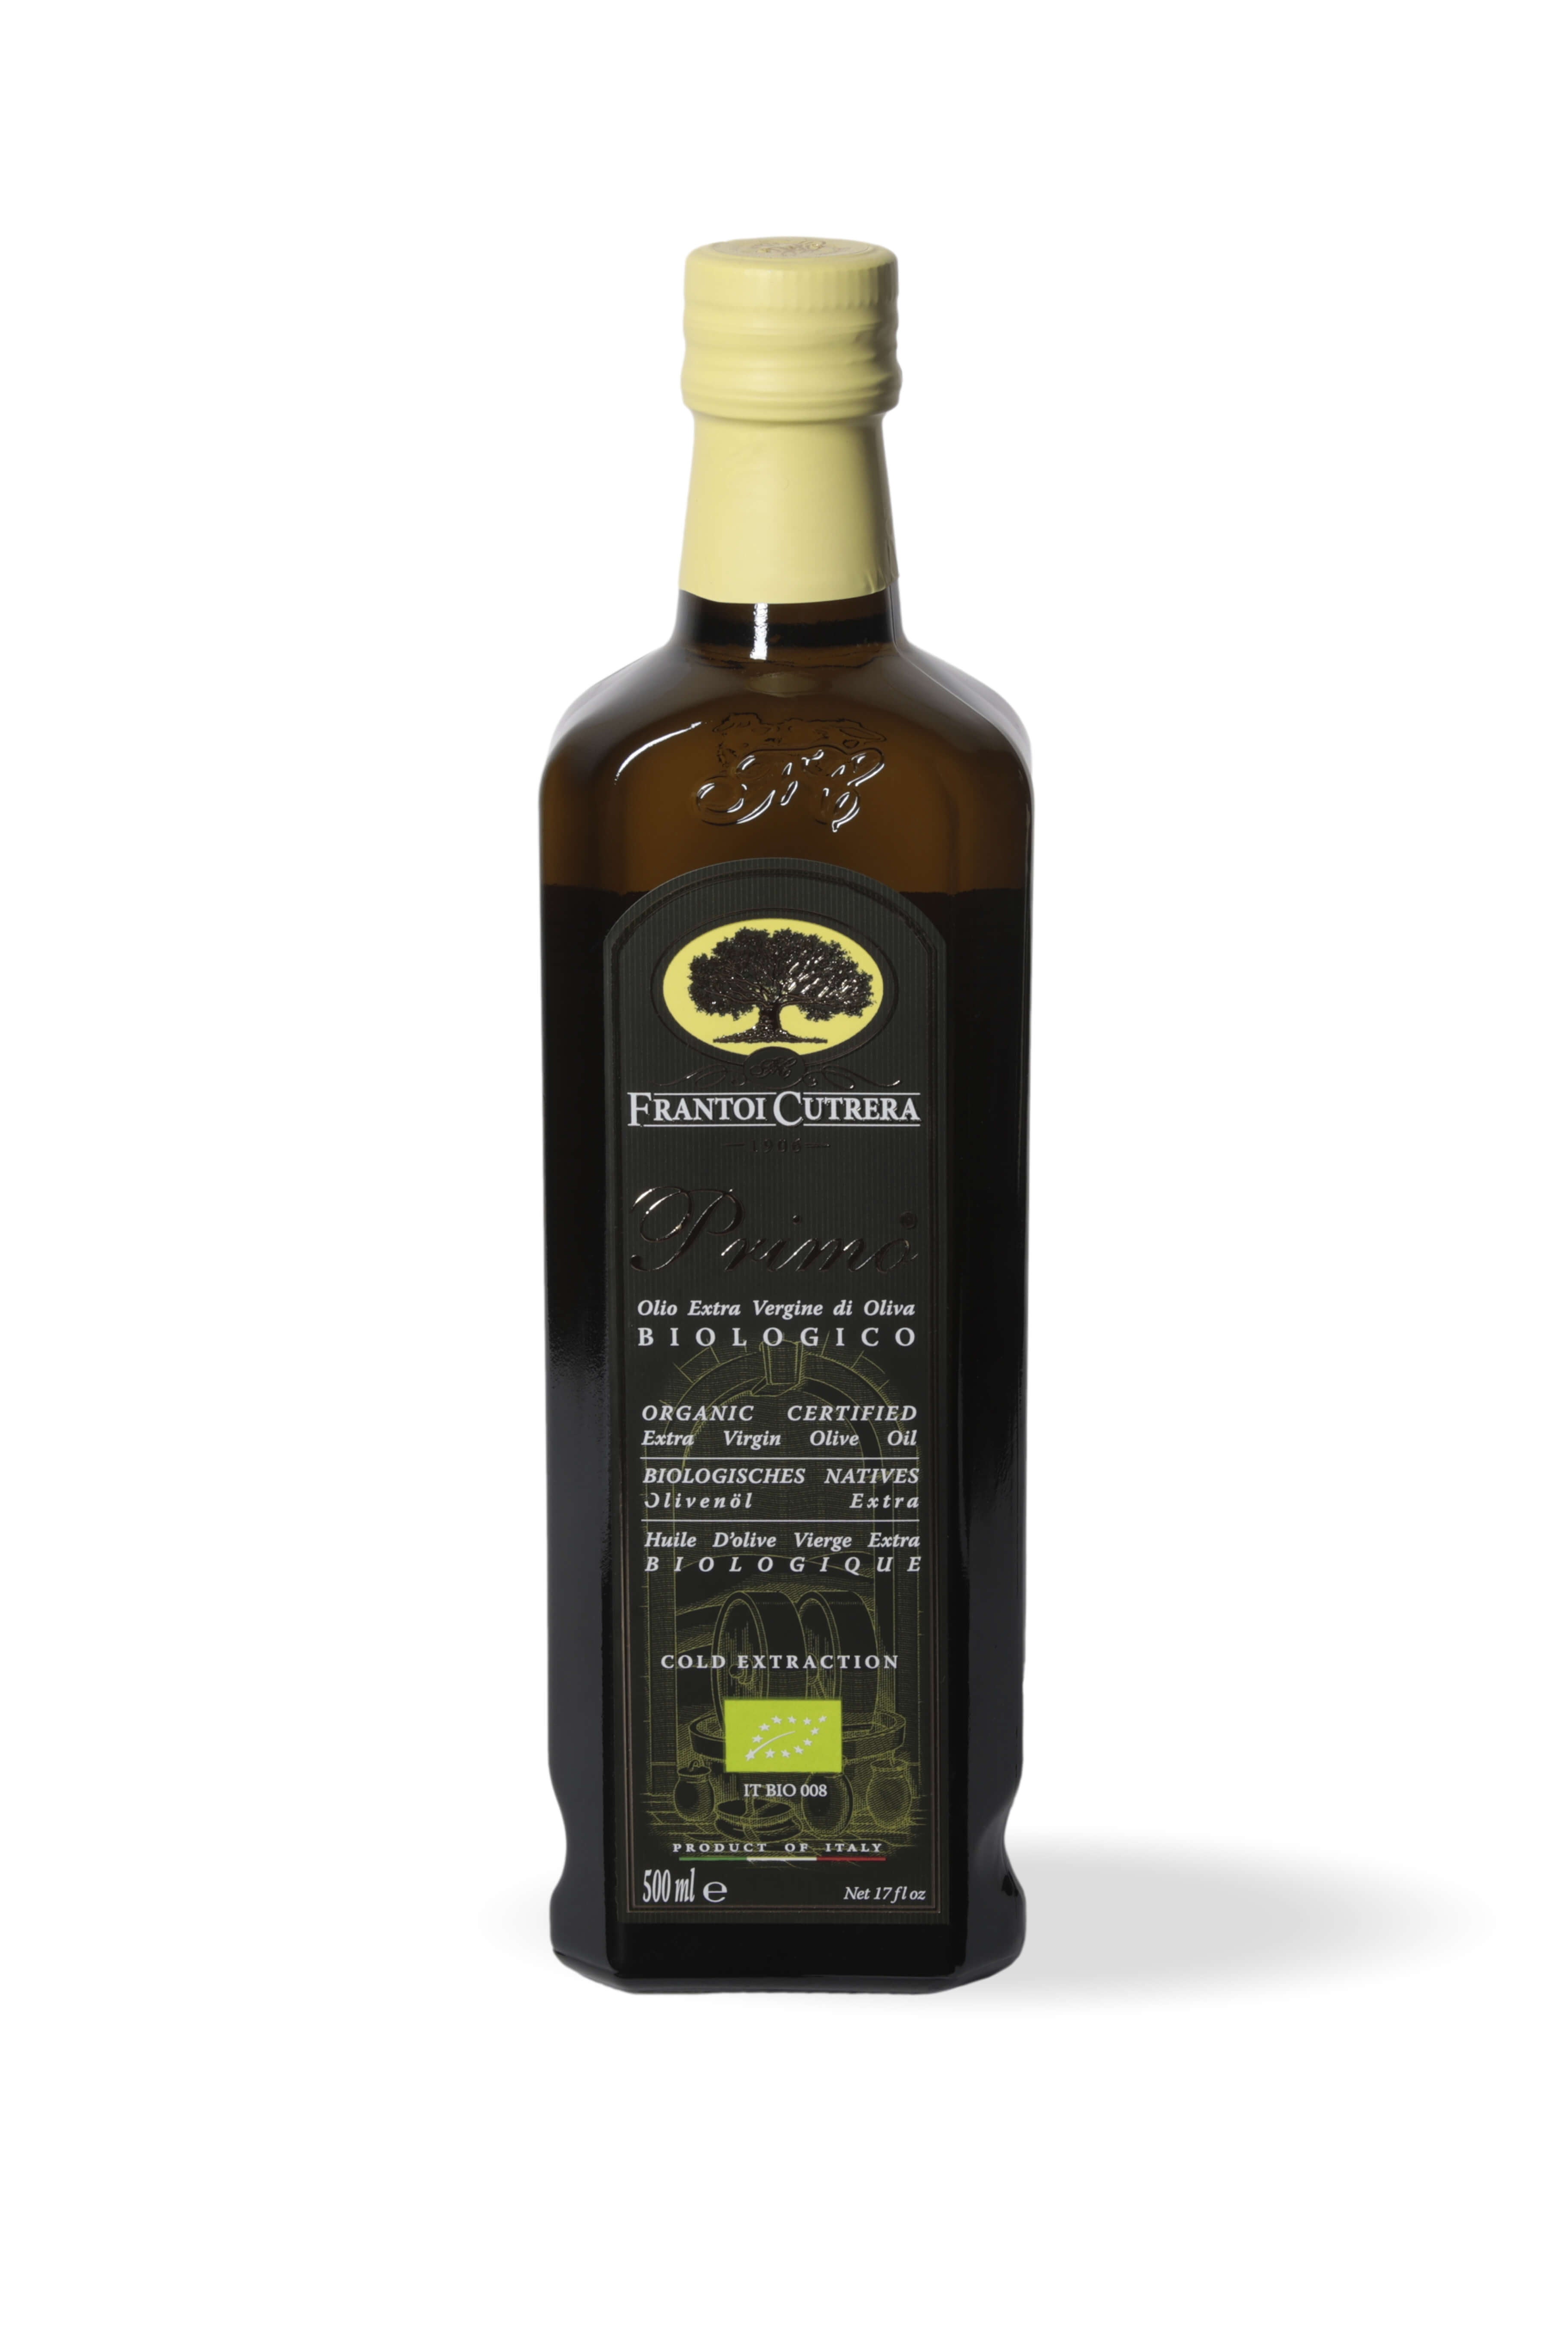 Huile d'olive nouvelle récolte en bouteille de 75 cl : Huiles bio